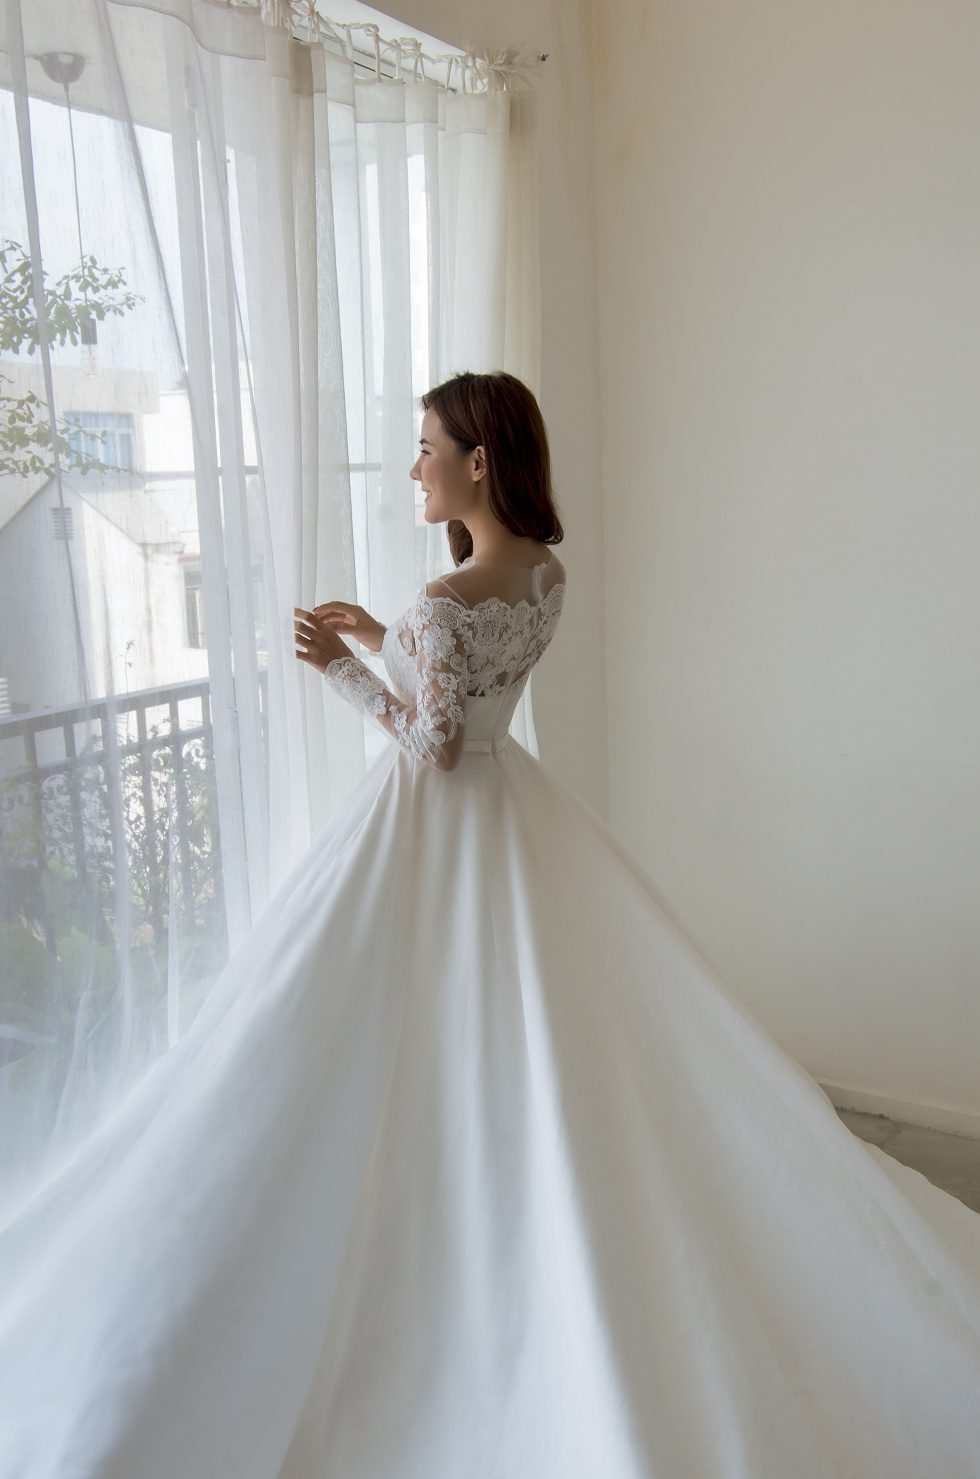 Váy cưới vải tuyn & ren lung linh màu trắng ngà - Lunss